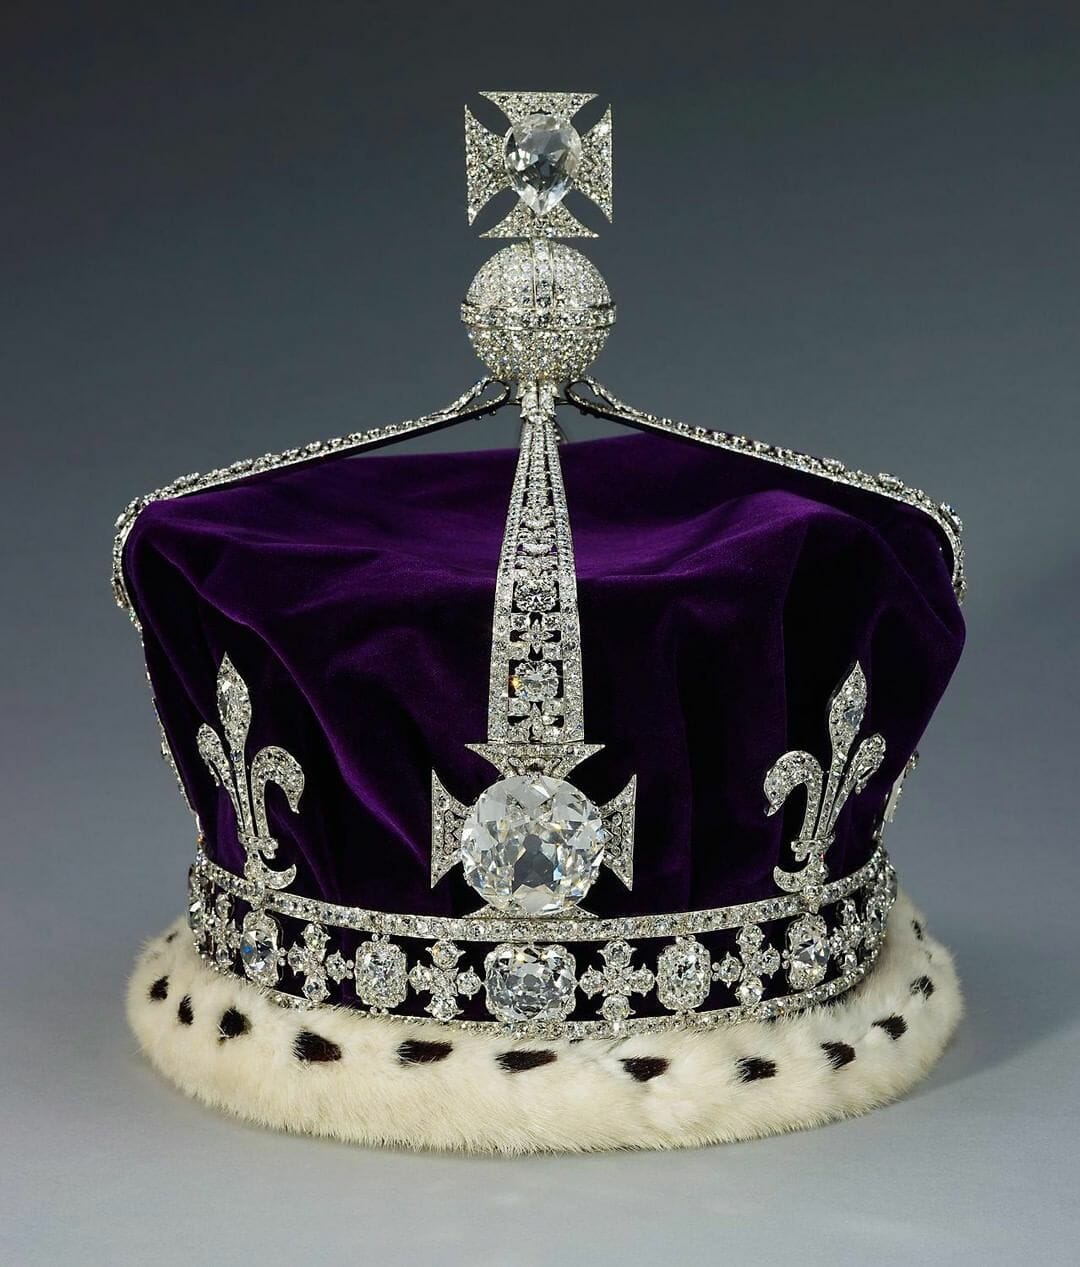 koh-i-noor diamondin the queen mother's crown